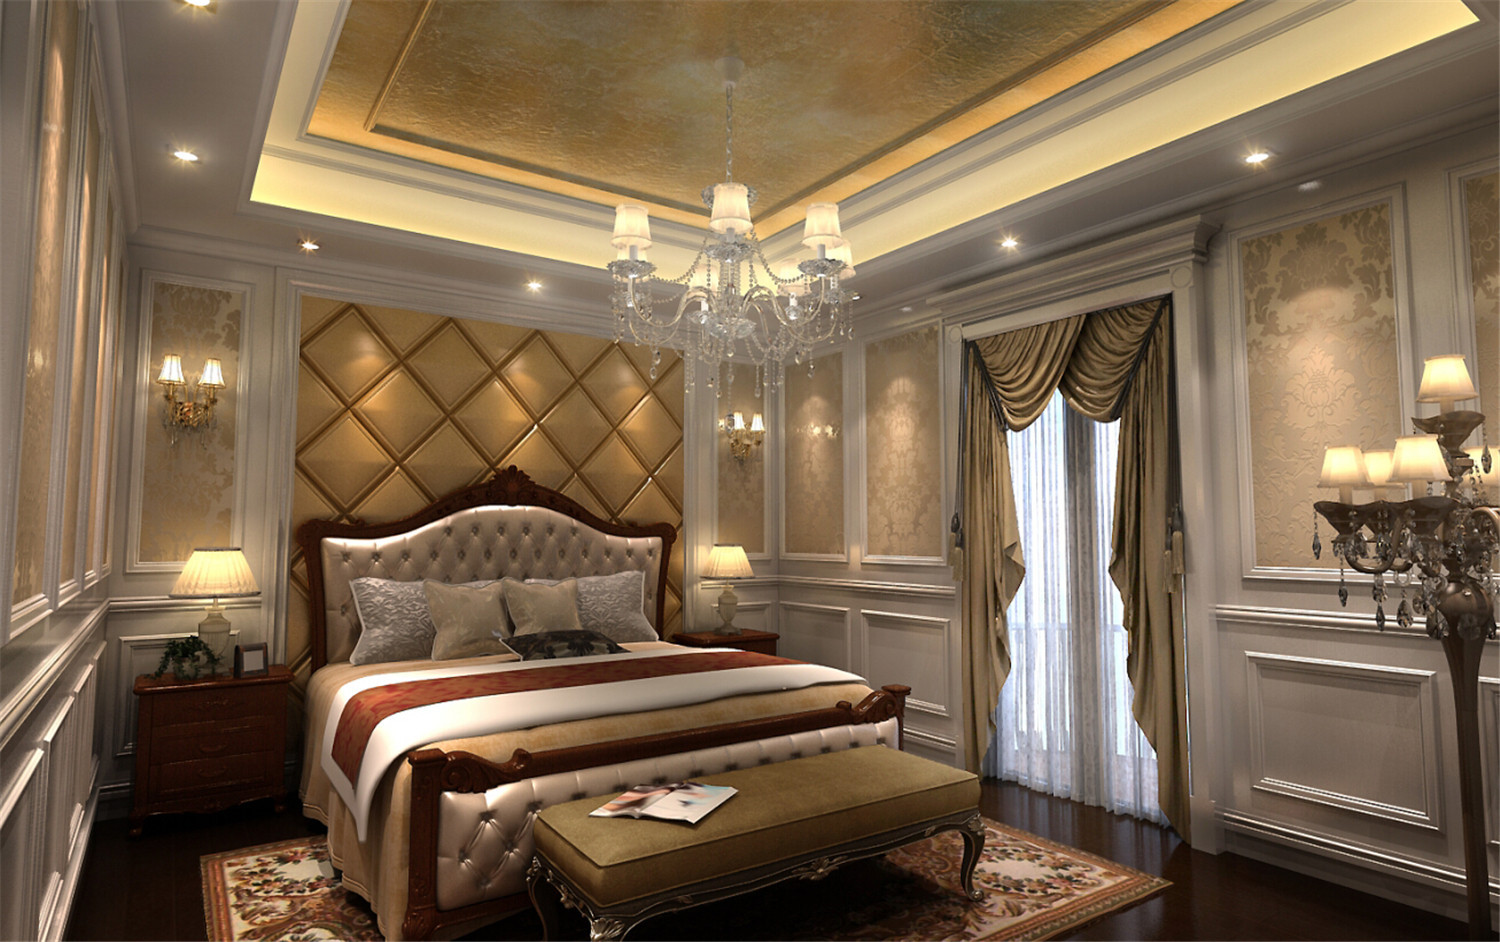 圣安德鲁斯 庄园别墅 欧美古典 腾龙设计 卧室图片来自孔继民在圣安德鲁斯庄园别墅欧式古典风格的分享